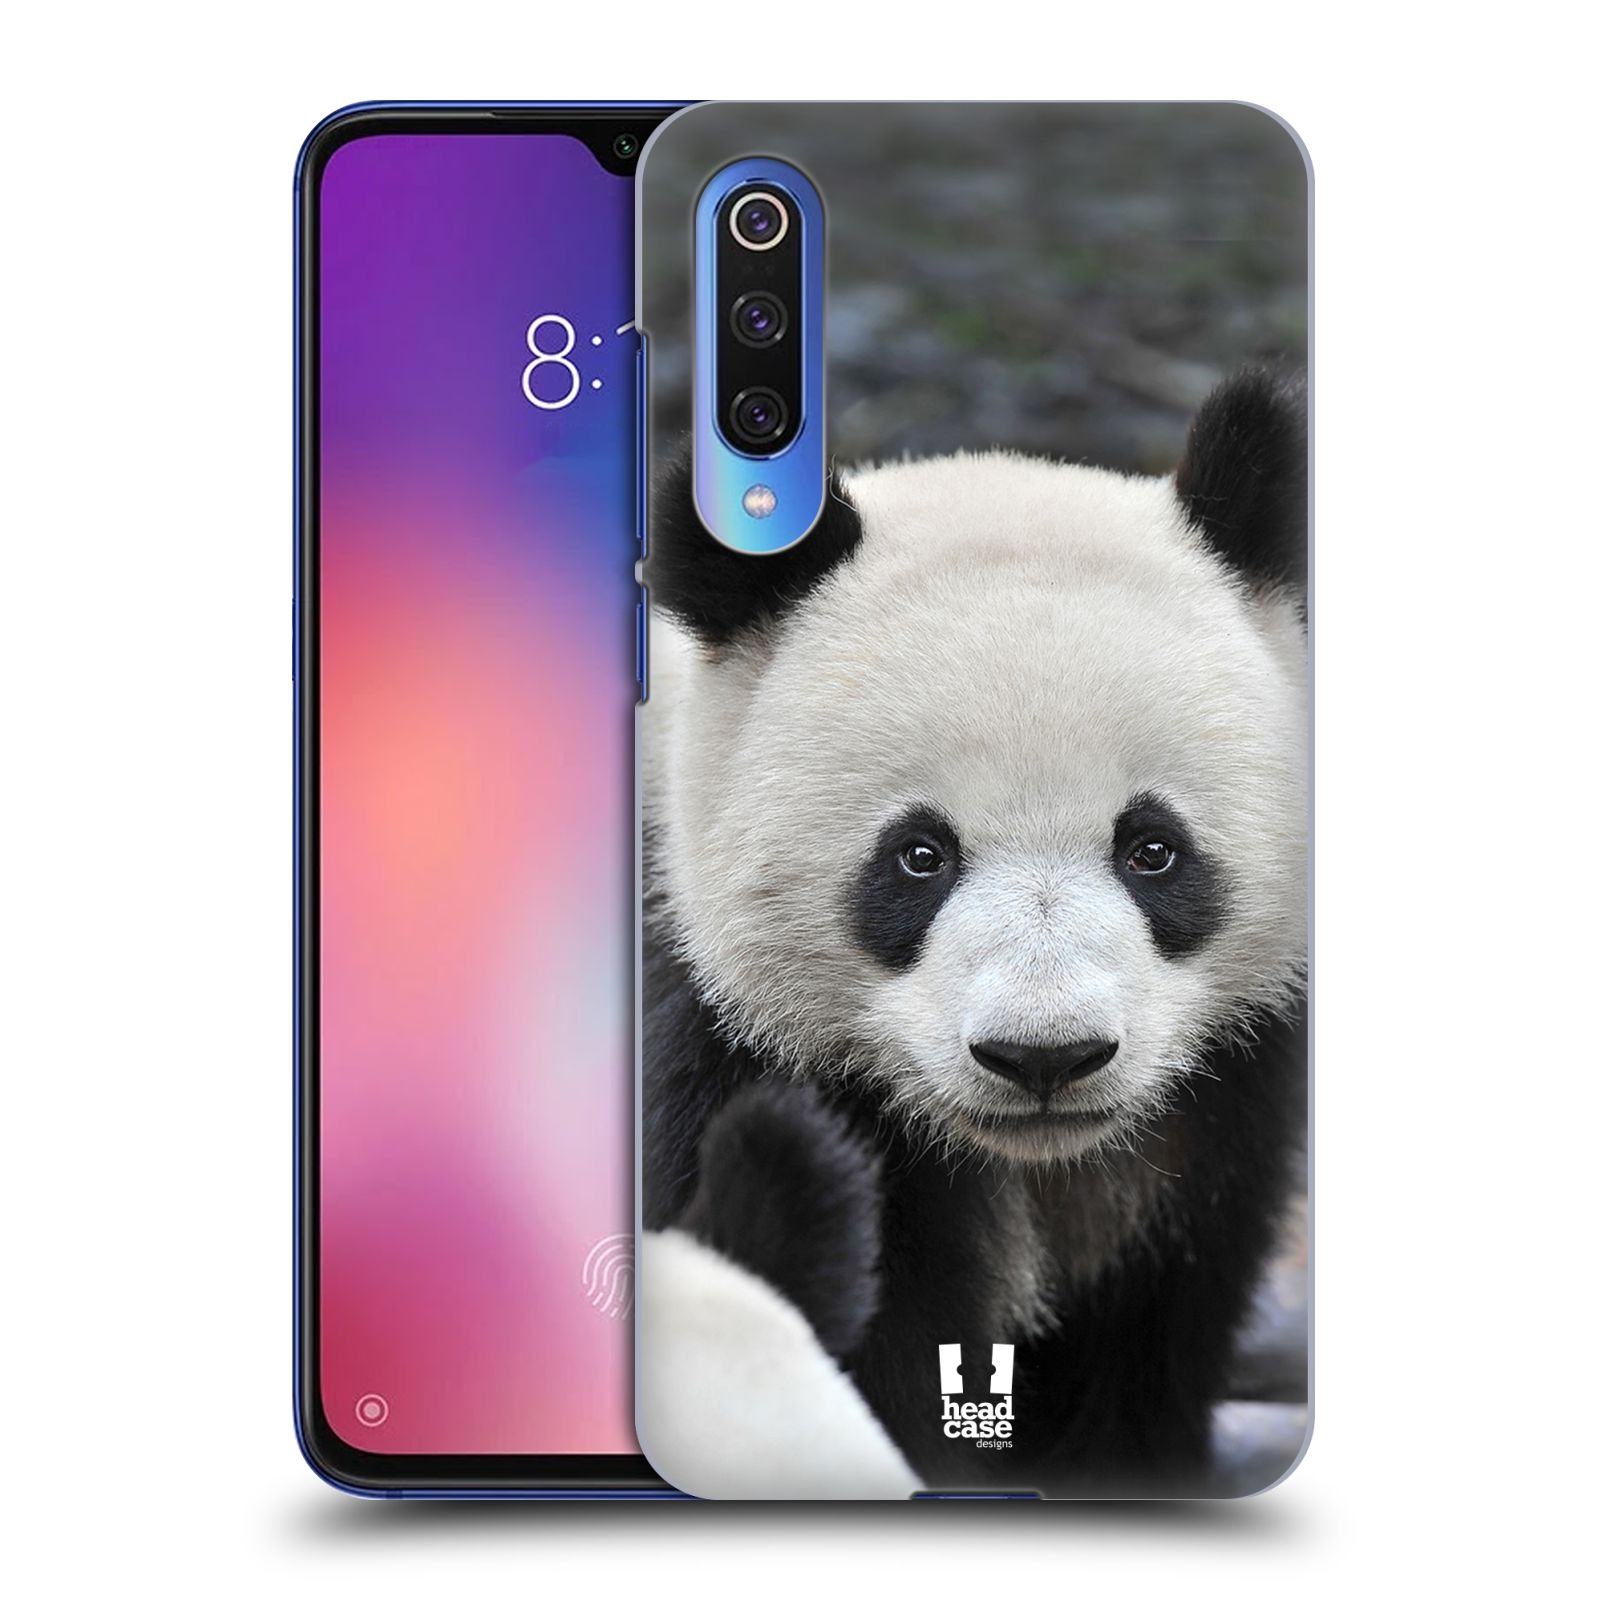 Zadní obal pro mobil Xiaomi Mi 9 SE - HEAD CASE - Svět zvířat medvěd panda